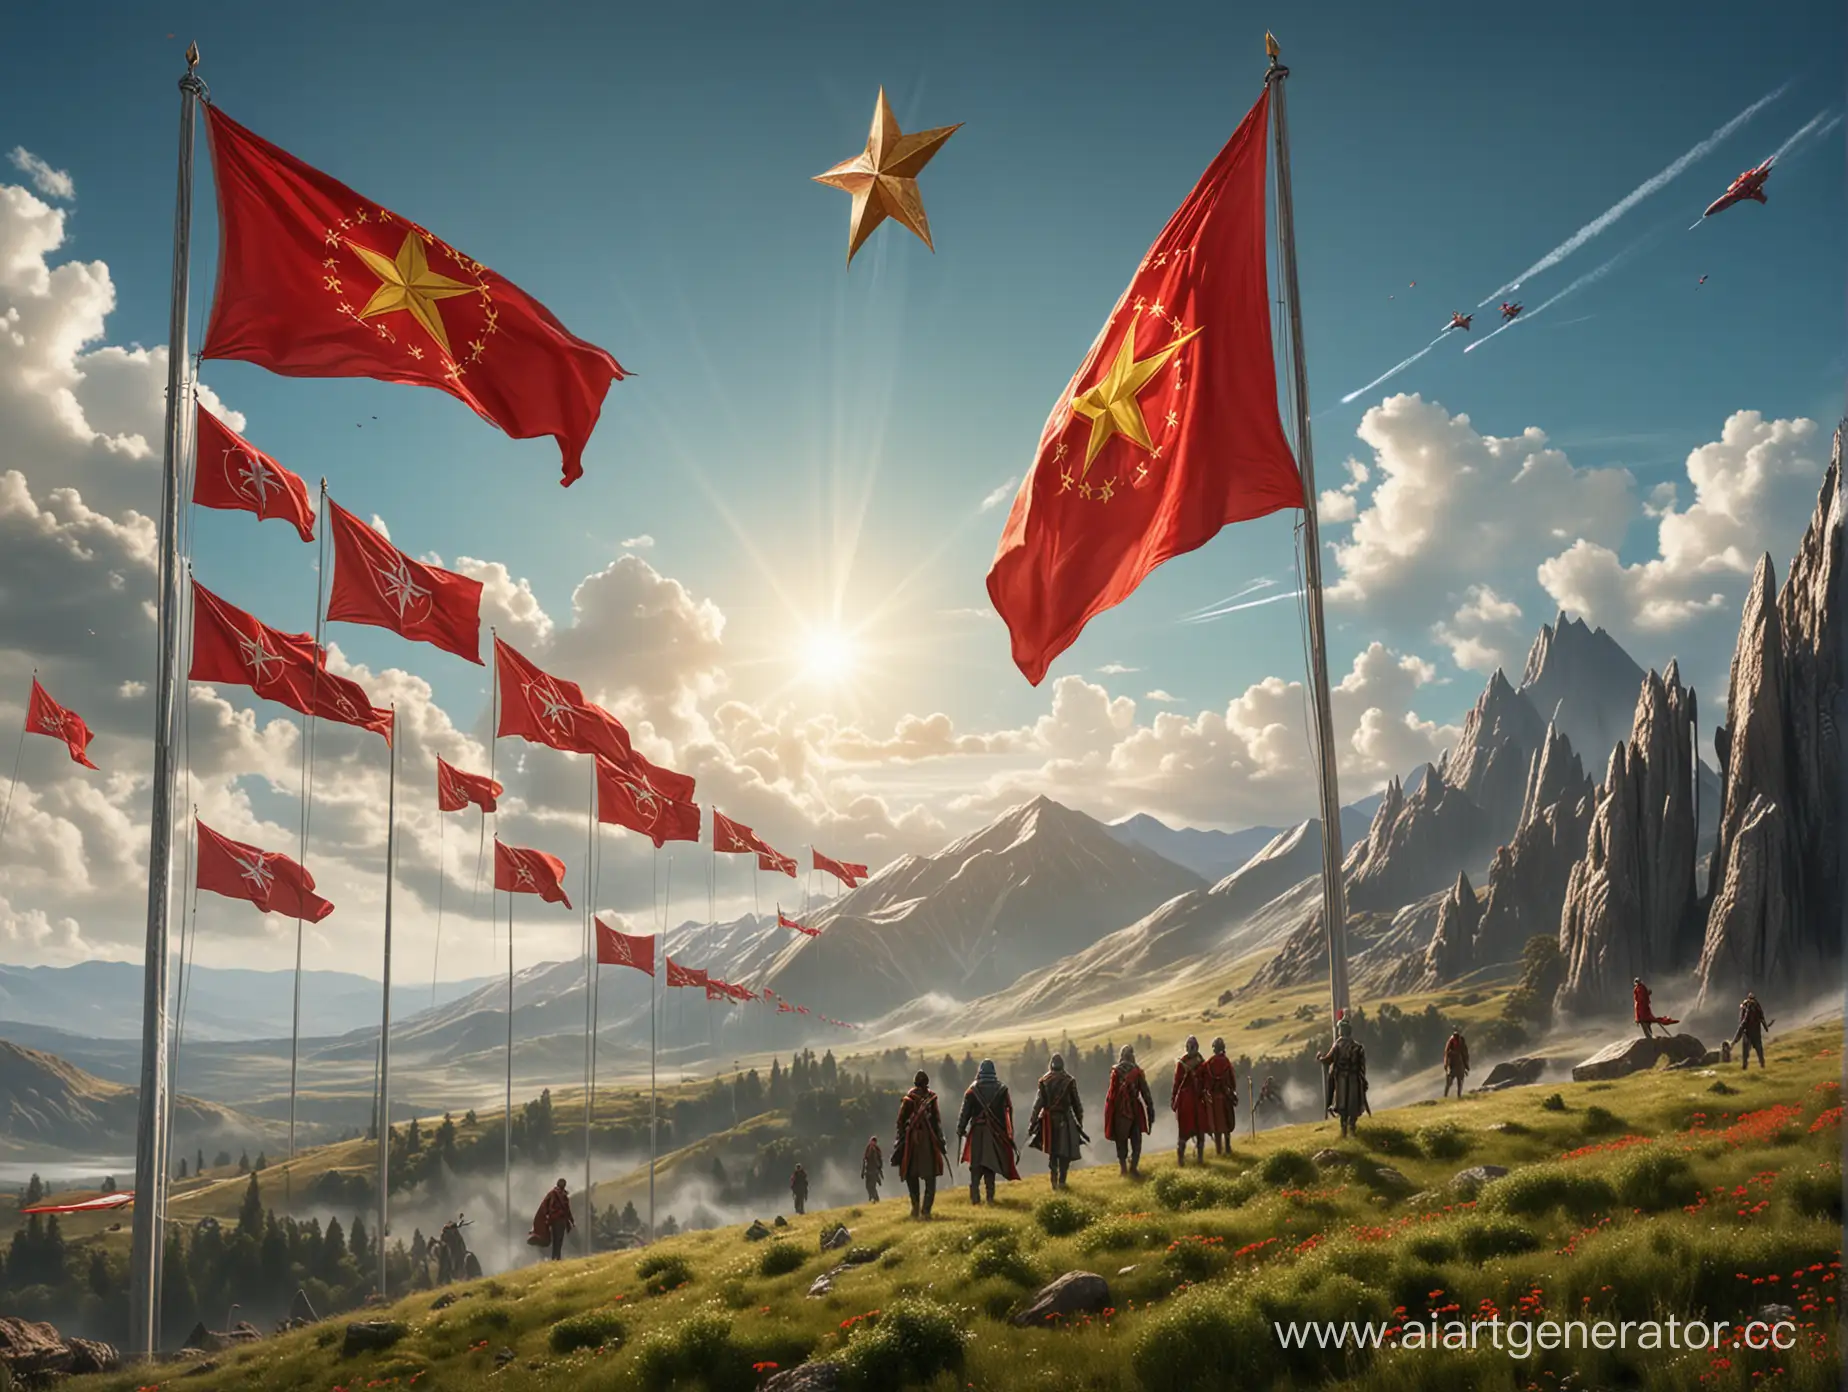 эльфийский союз социалистических республик, голубое небо, зелёных холм, красный флаг, красная эльфийская одежда, золотая звезда на флаге, на фоне космических кораблей в небе